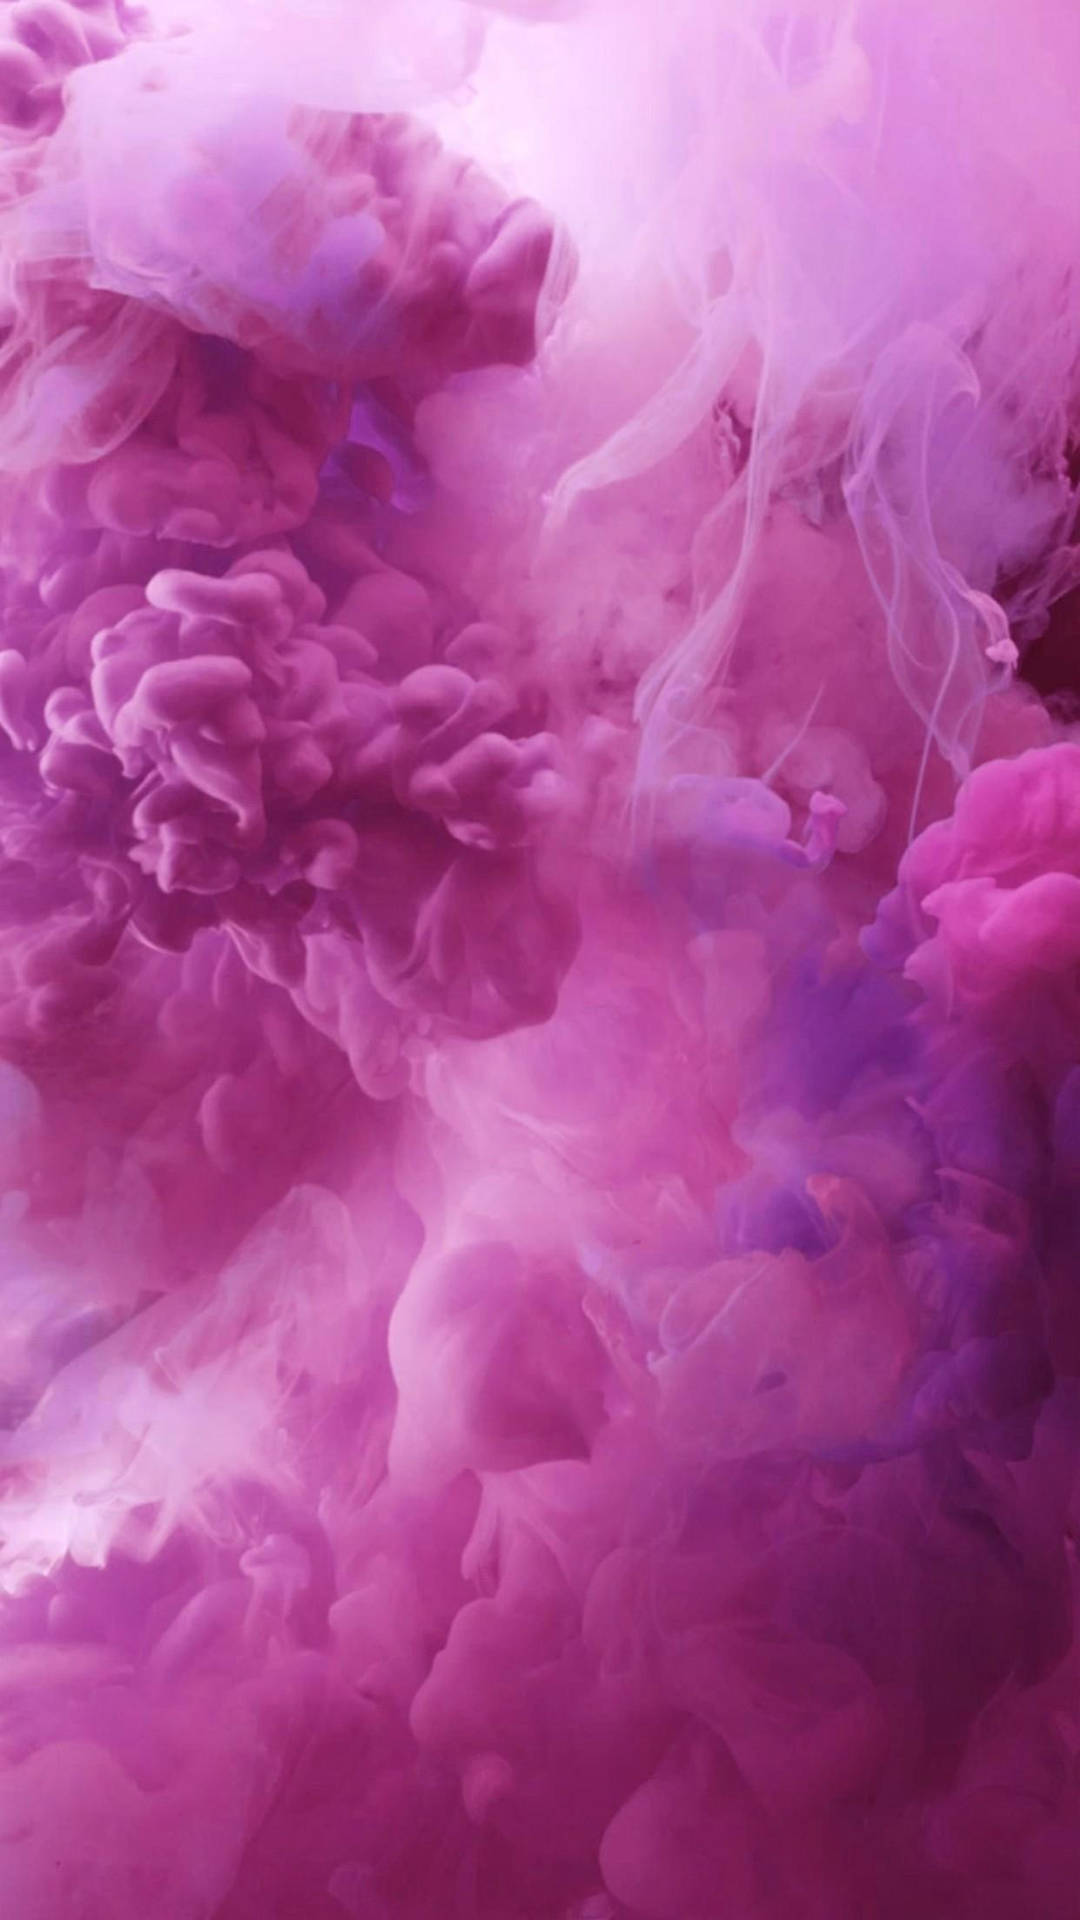 Iphone Pink Aesthetic Smoke Background